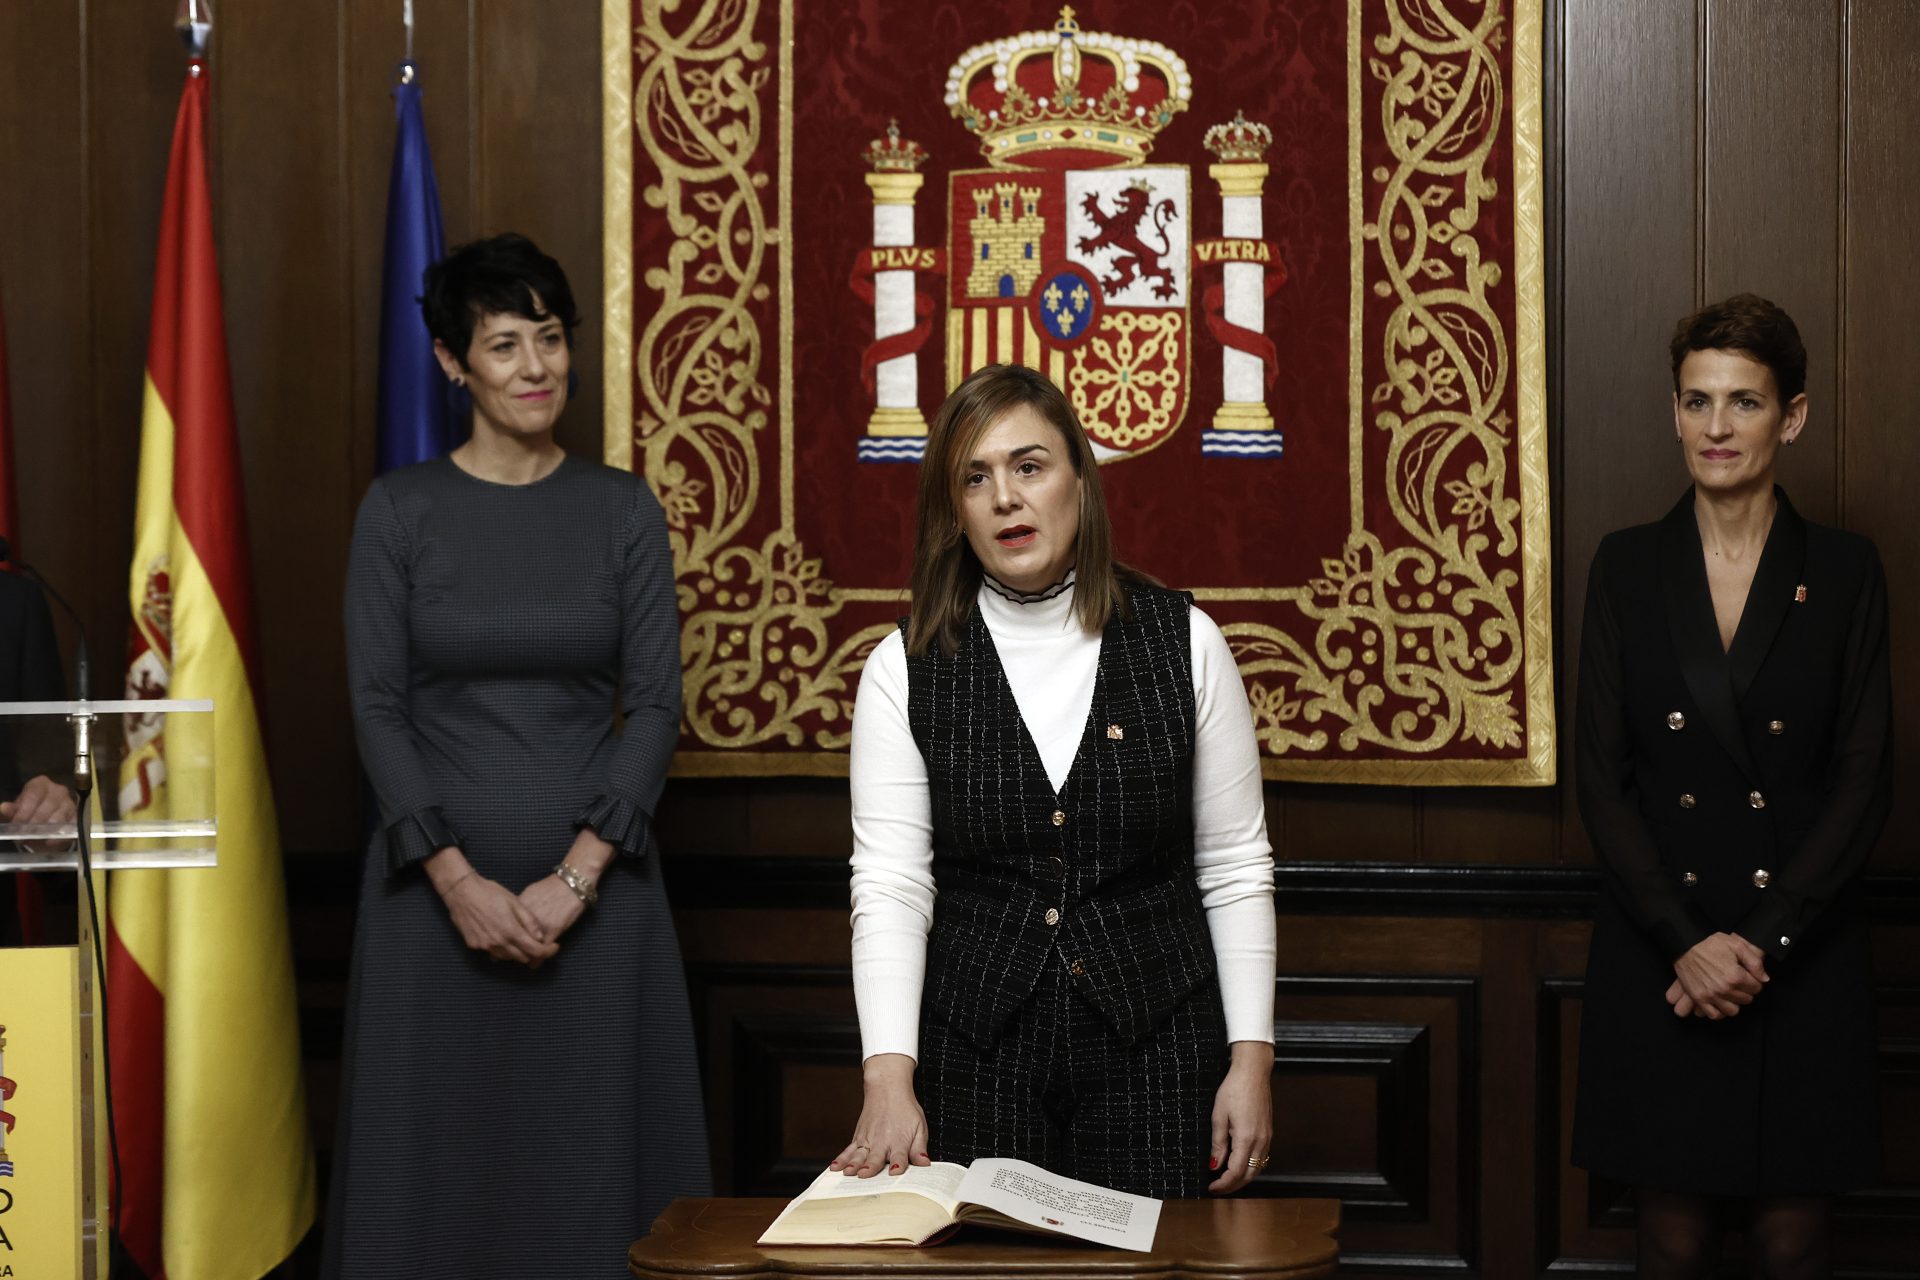 La nueva delegada del Gobierno en Navarra apela “a la convivencia y al respeto”